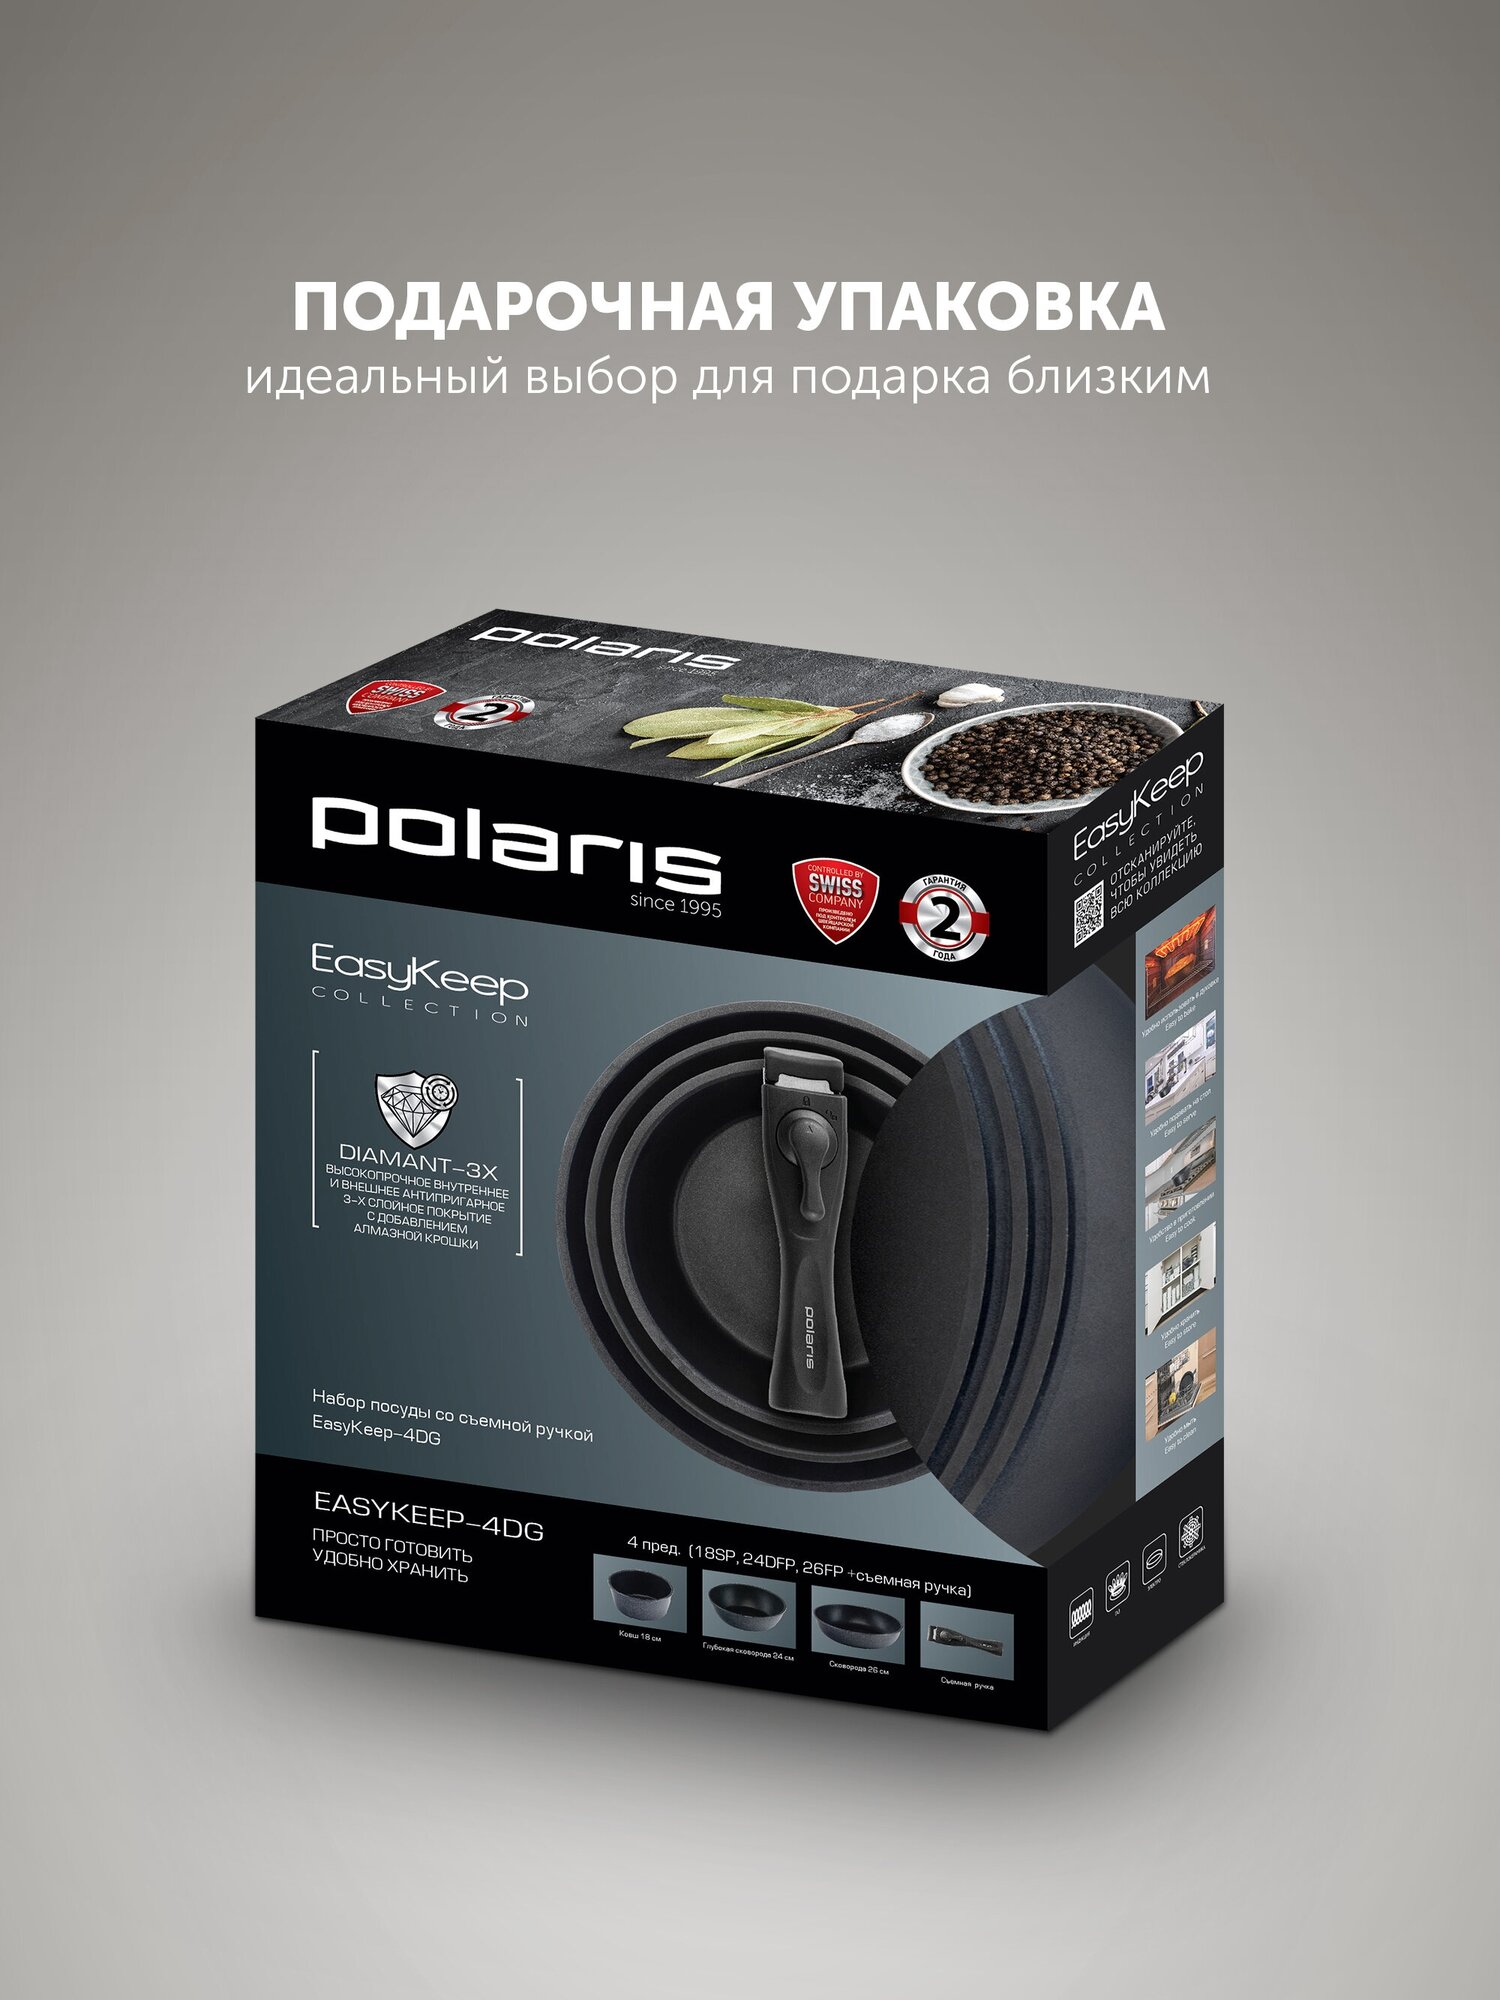 Набор посуды Polaris EasyKeep-4DG - 4 предмета - фото №8